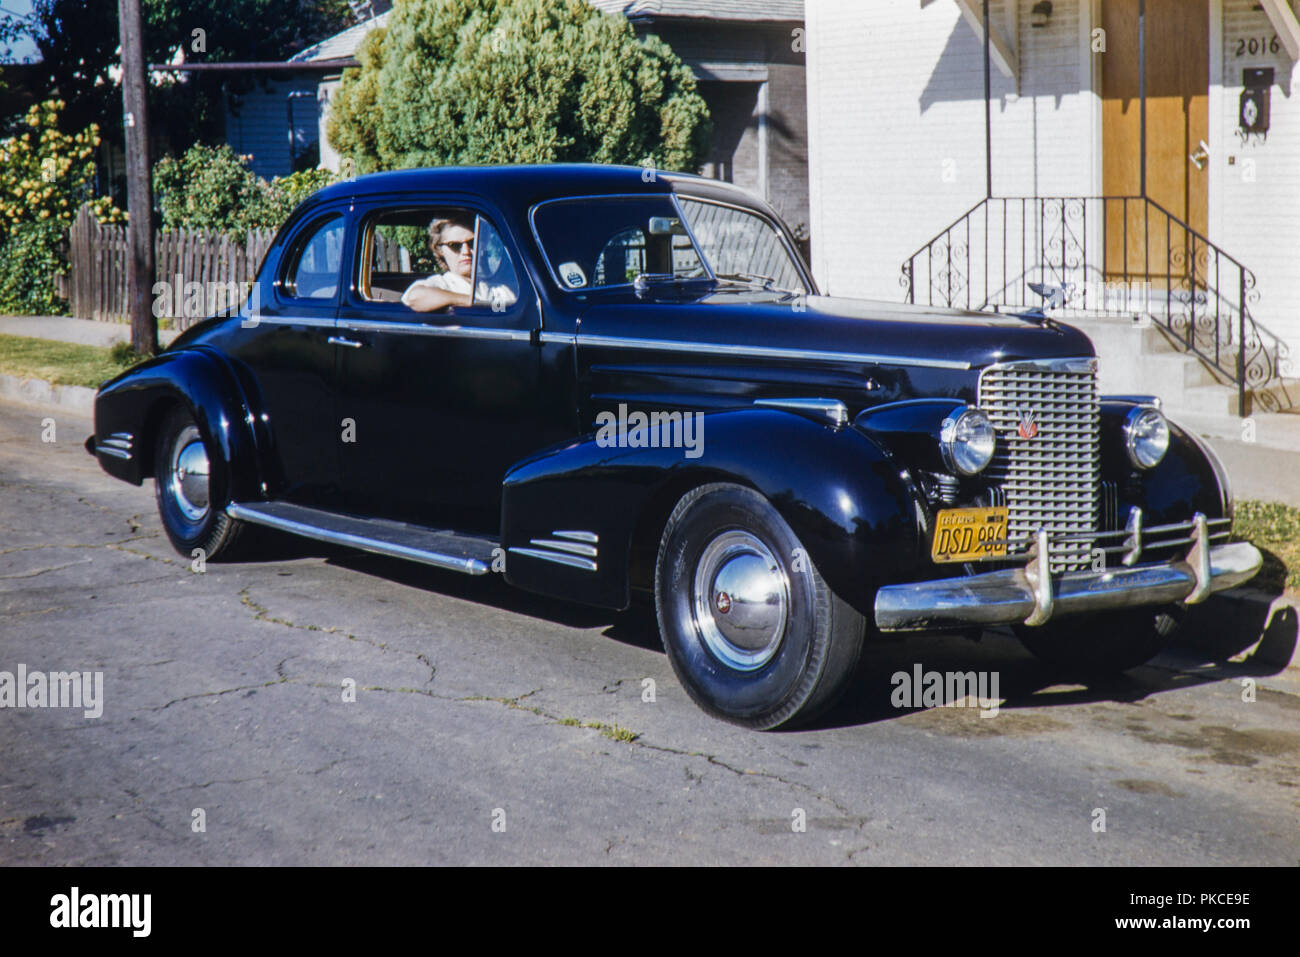 Chrome et noir 2 portes berline Cadillac vieille voiture américaine avec une plaque de la Californie de 1956. Image prise en 1962 Banque D'Images